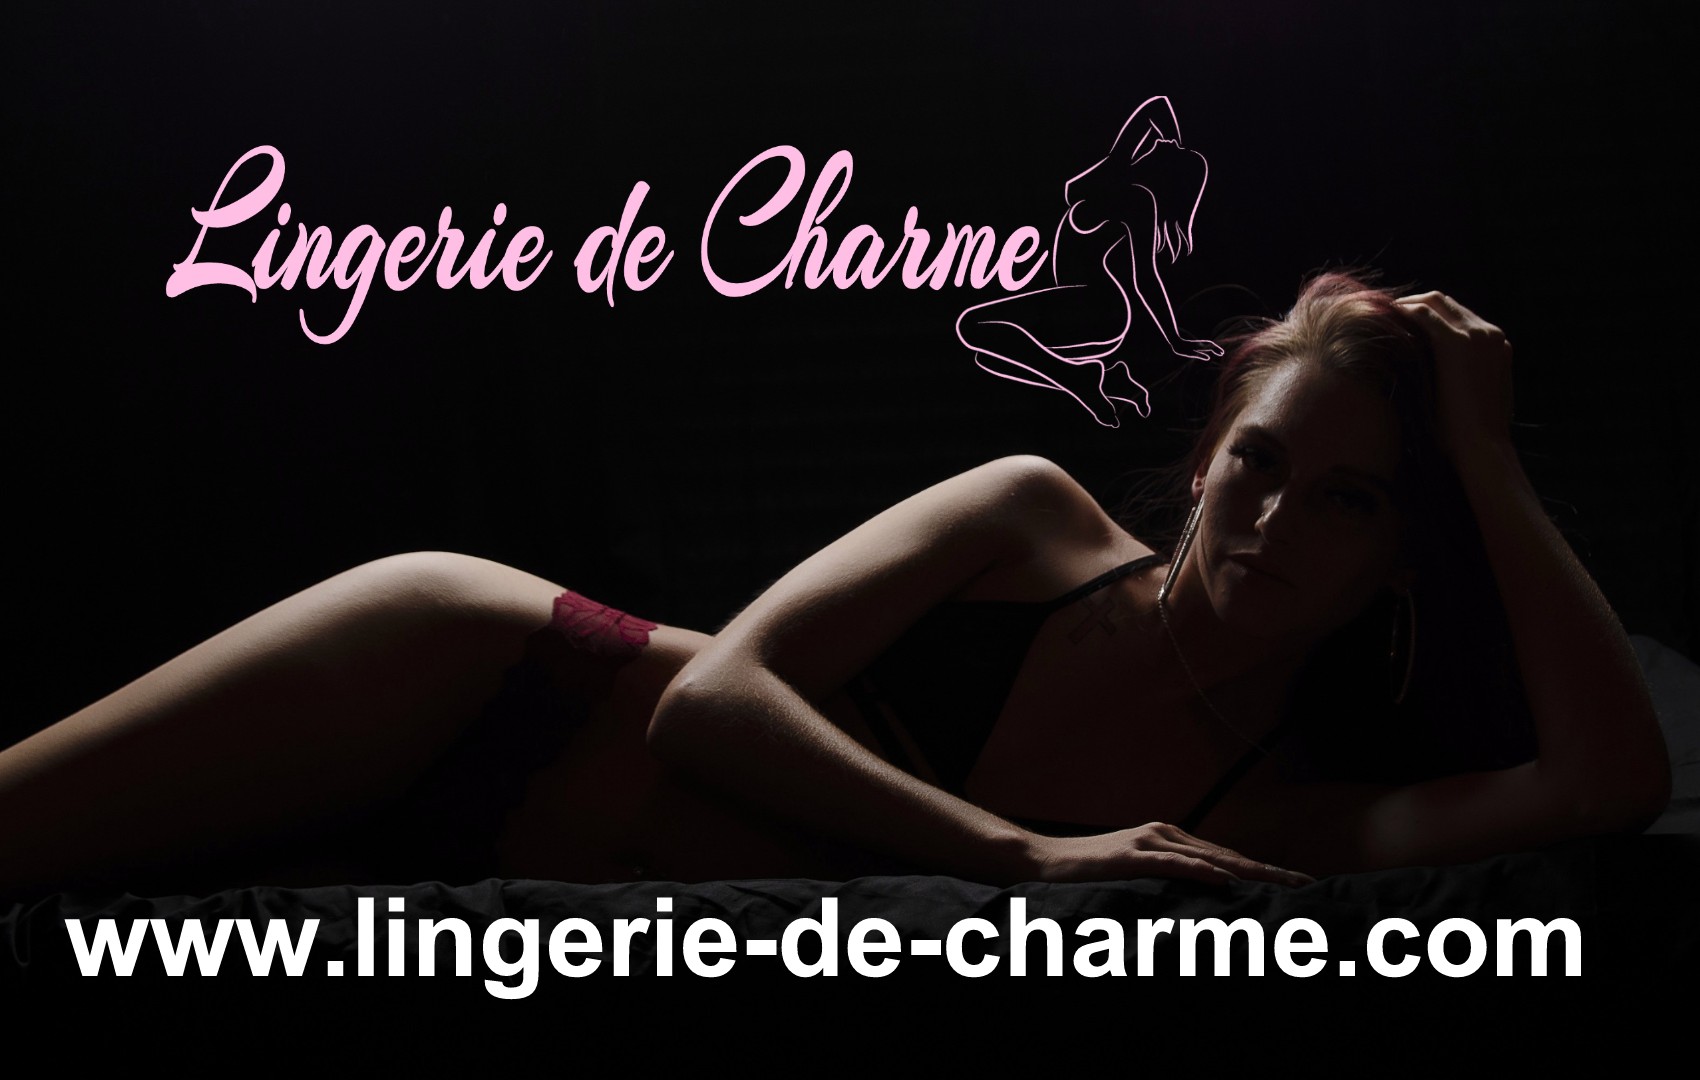 LINGERIE DE CHARME SAINT-ROMAIN 16 - LINGERIE SEXY SAINT-ROMAIN 16